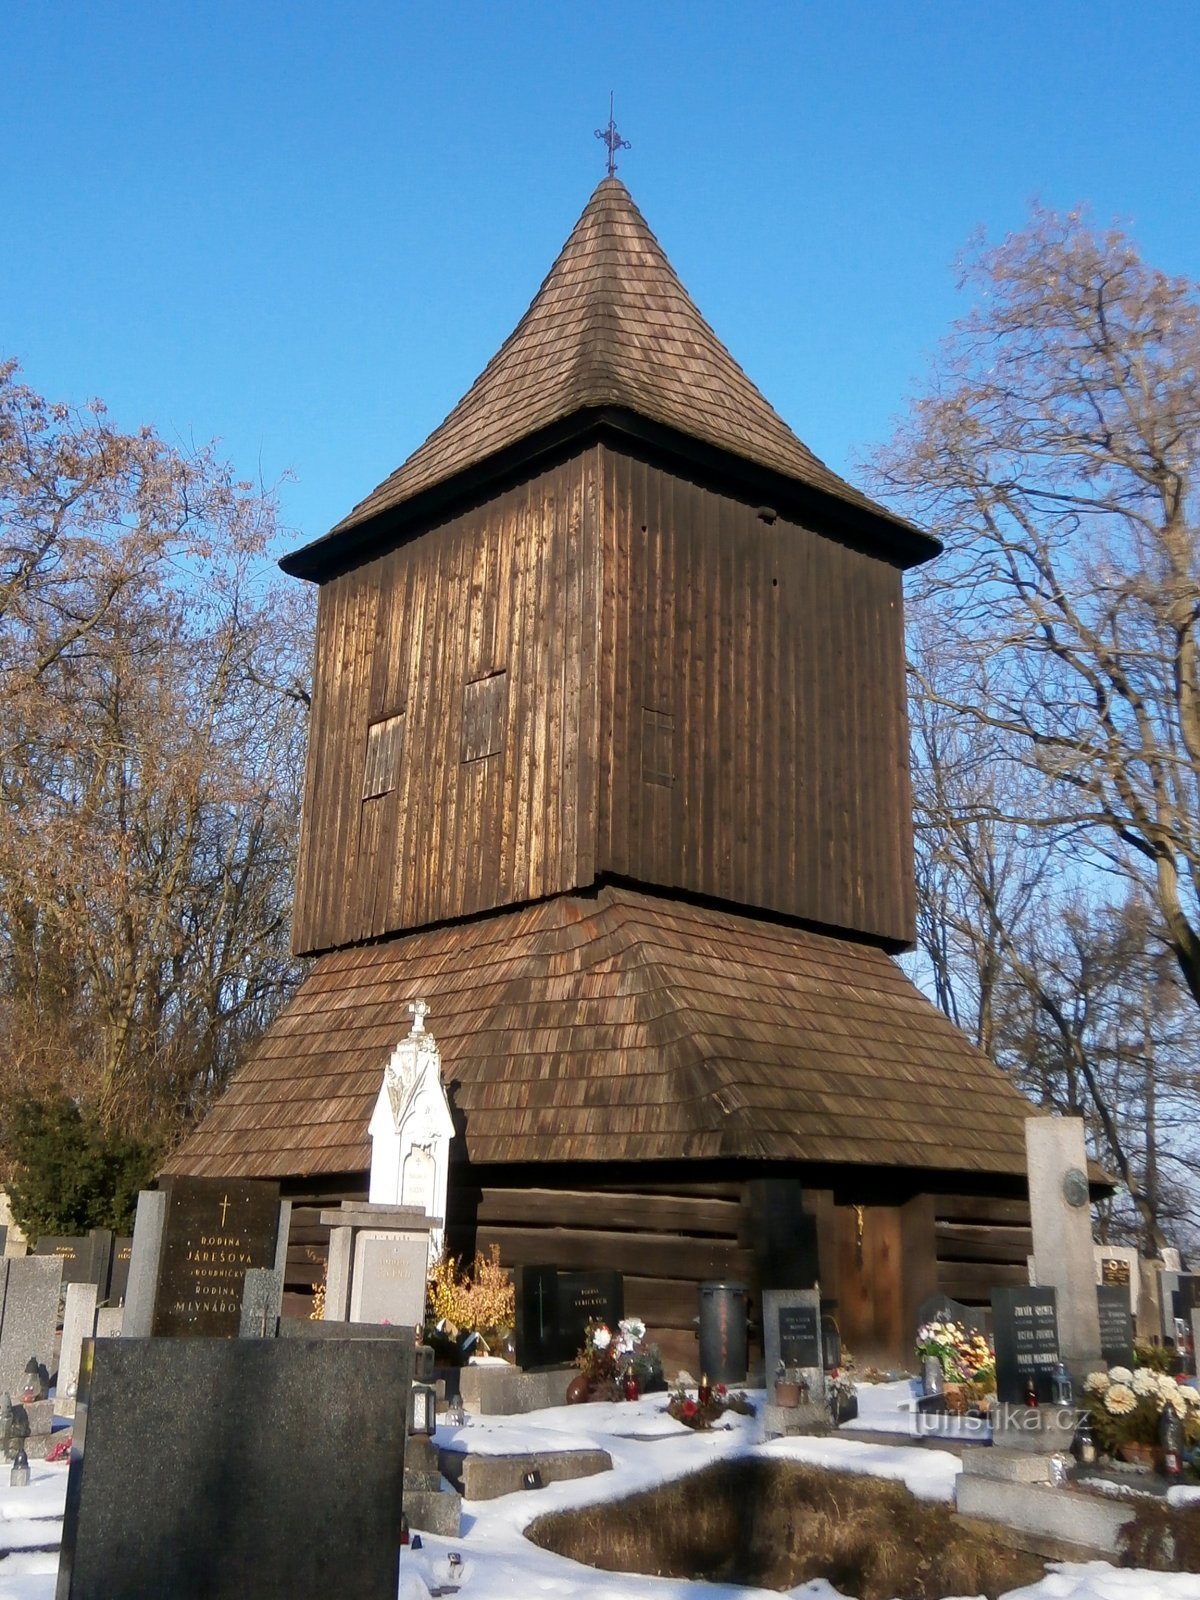 Tháp chuông tại lâu đài (Hradec Králové, 14.2.2017/XNUMX/XNUMX)